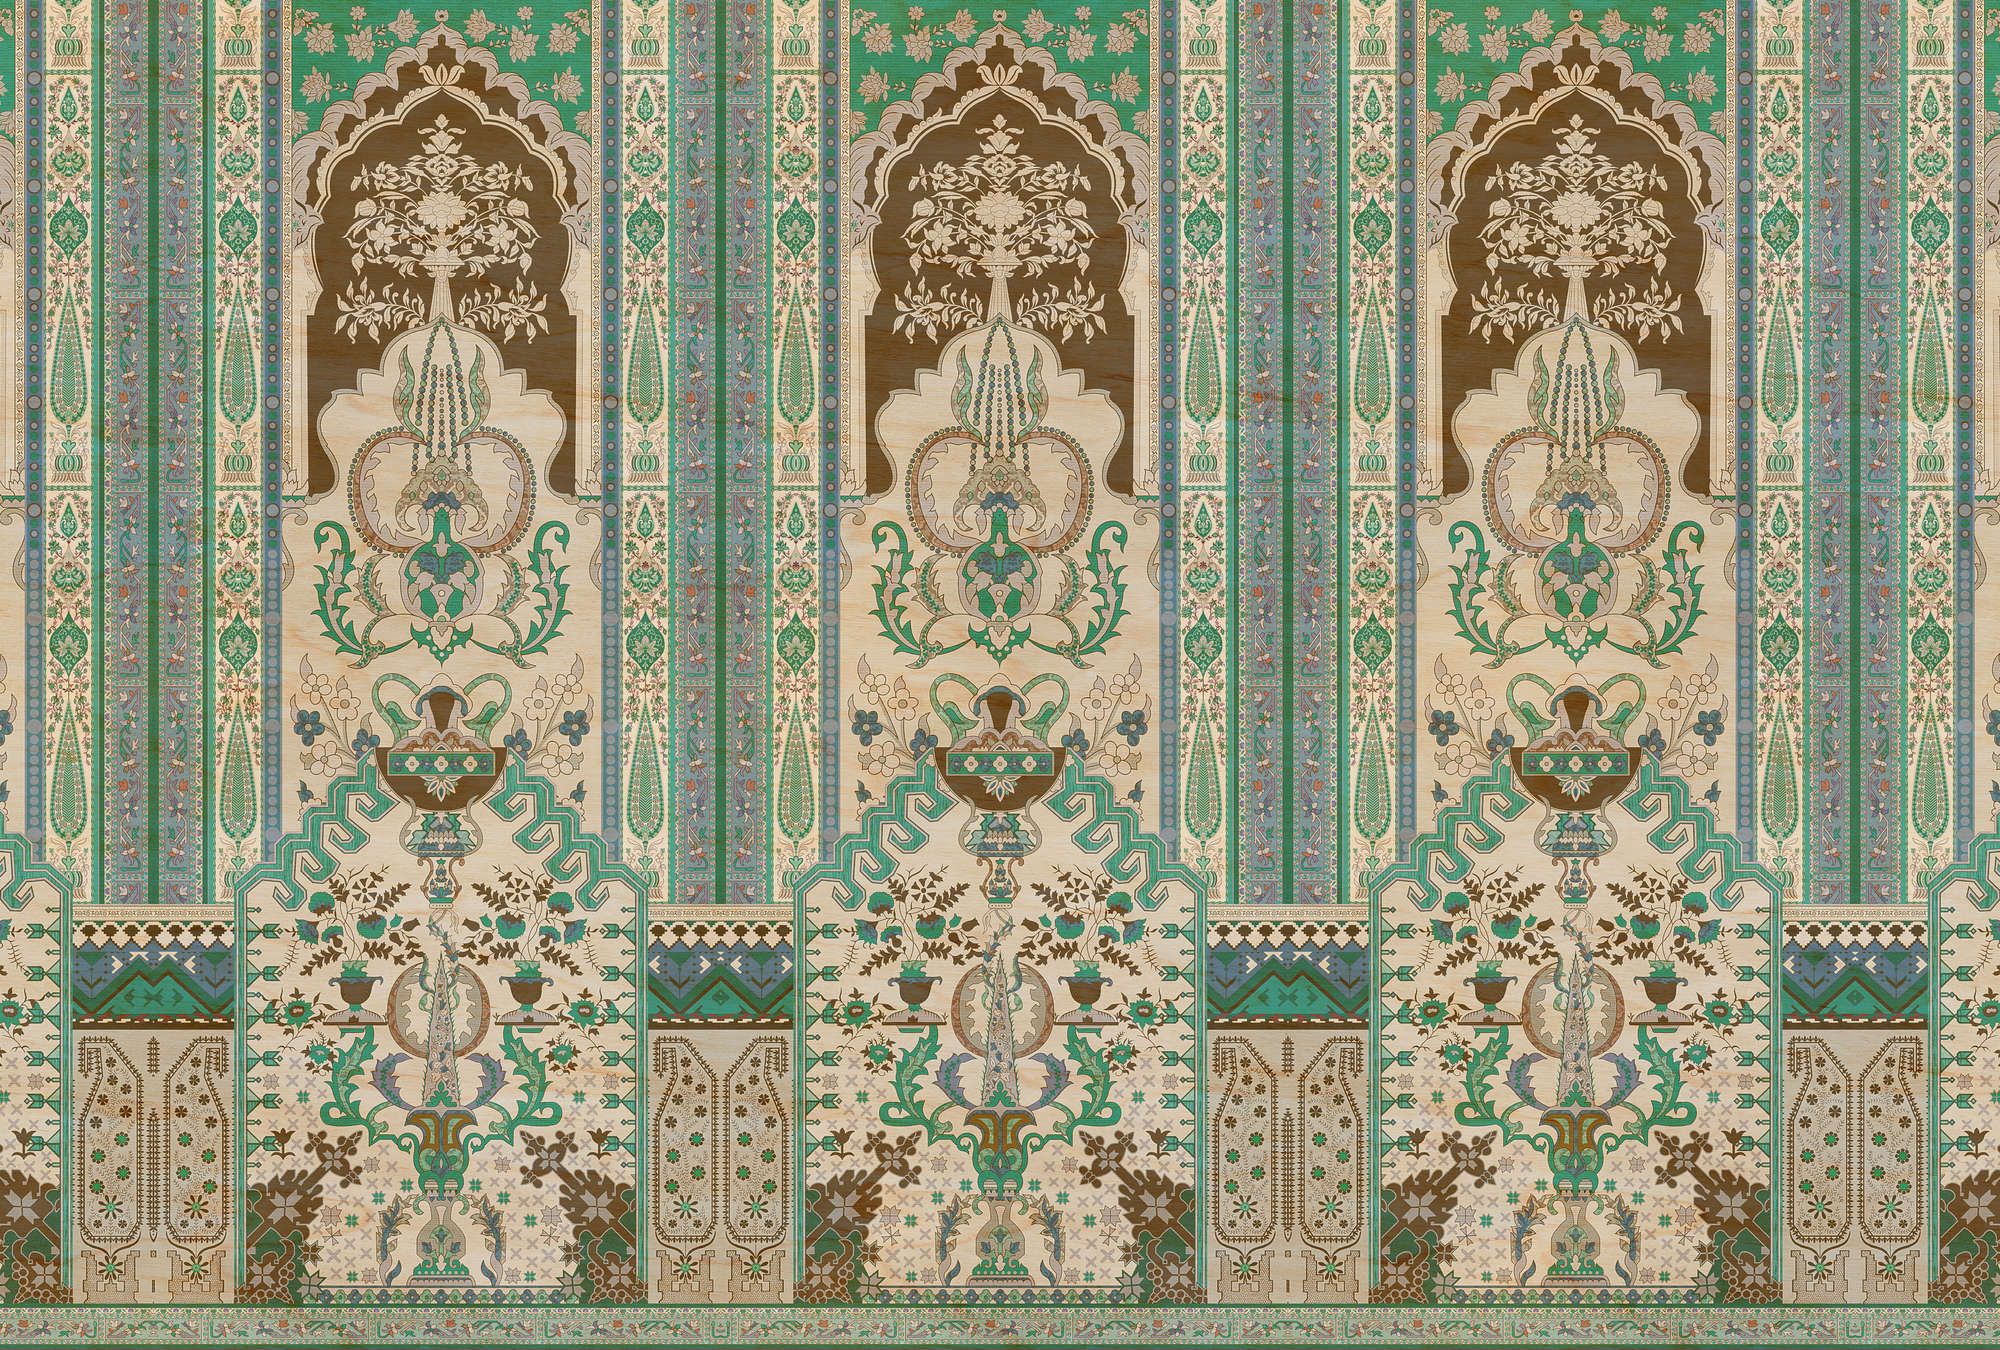             Fototapete »tara« - Ornamentvertäfelung mit Sperrholzstruktur – Grün, Beige | Glattes, leicht perlmutt-schimmerndes Vlies
        